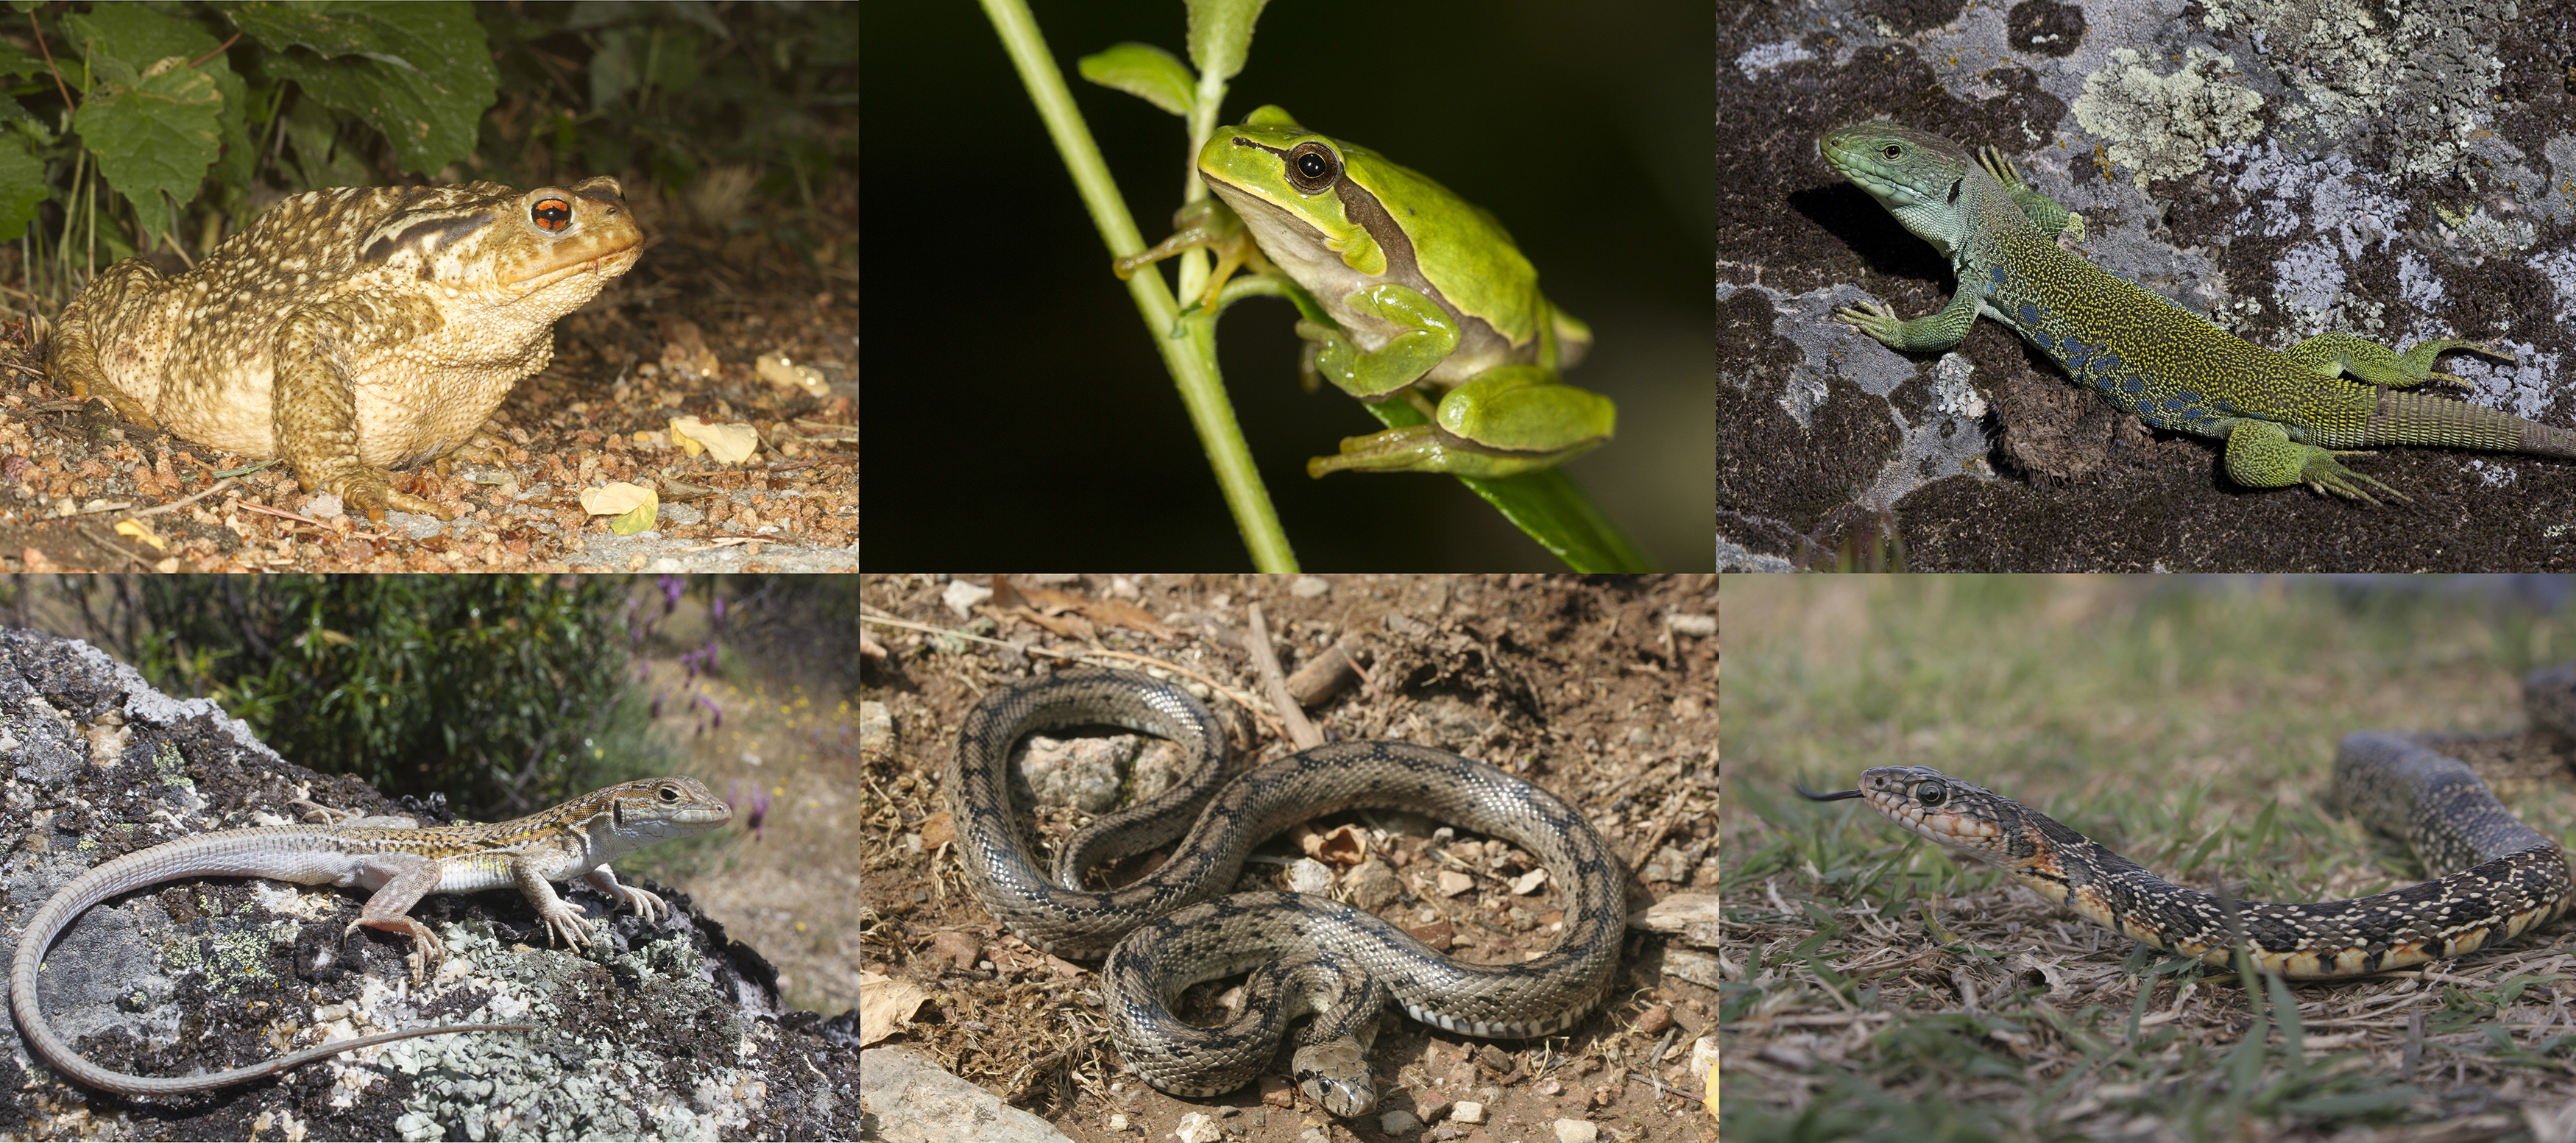 Anfibios y reptiles ibéricos: un tesoro biogeográfico lleno de endemismos.